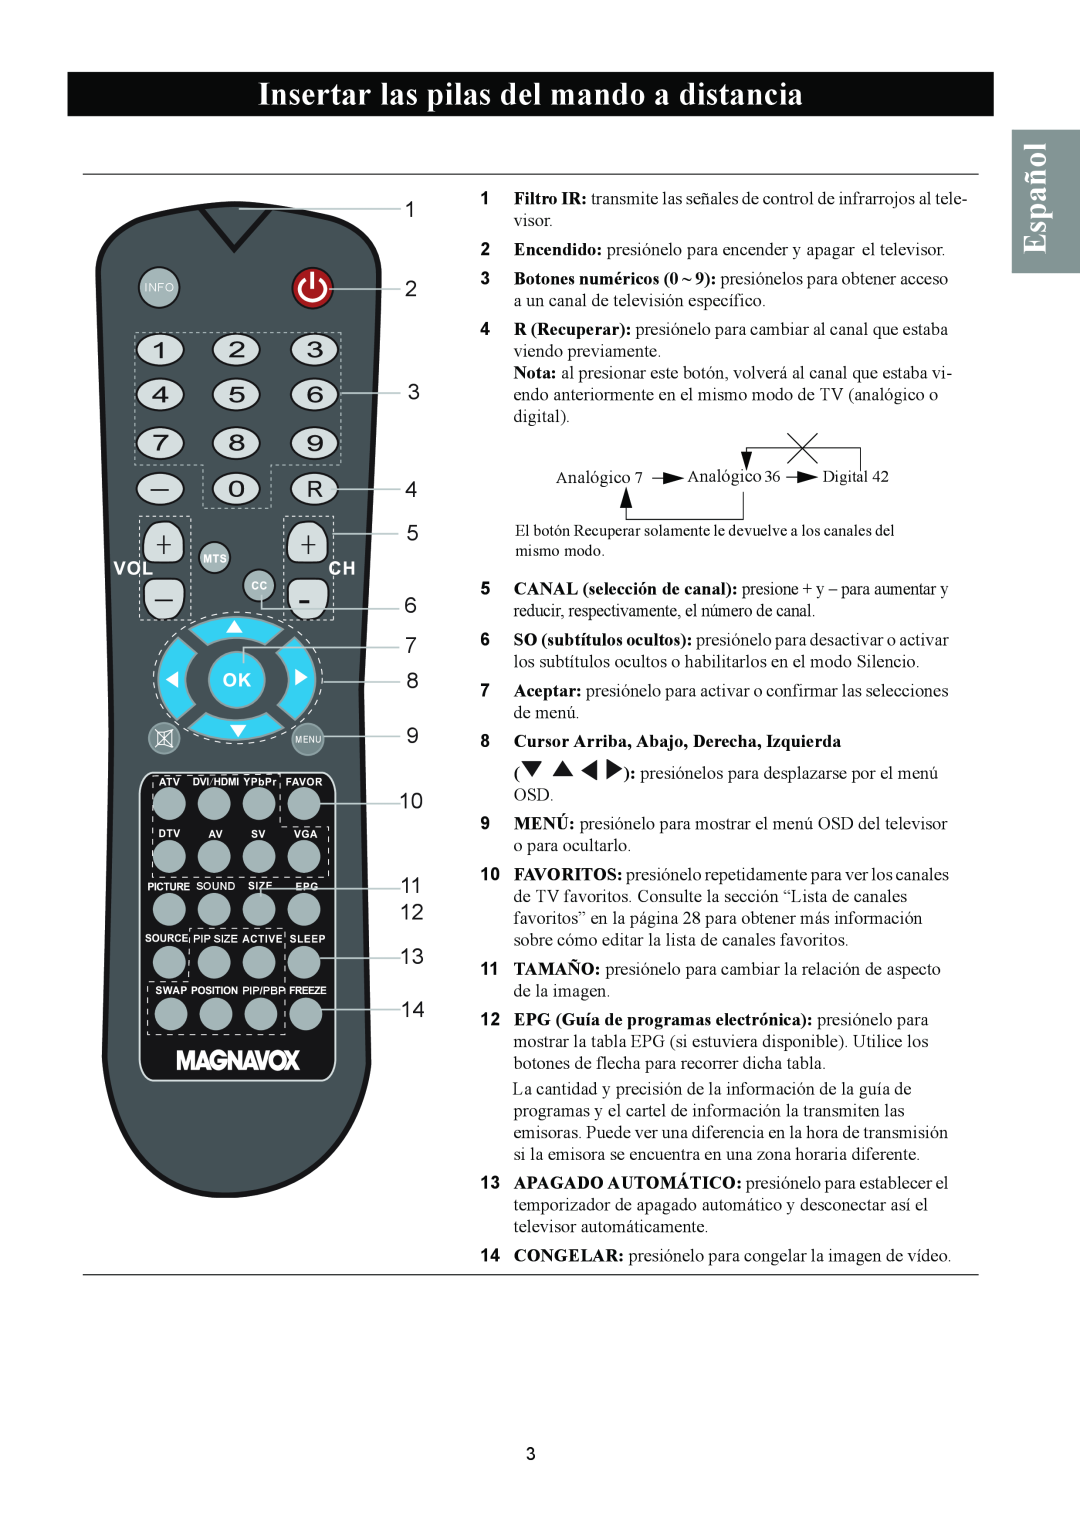 Magnavox 50ML8105D/17 Insertar las pilas del mando a distancia, Español, Cursor Arriba, Abajo, Derecha, Izquierda 